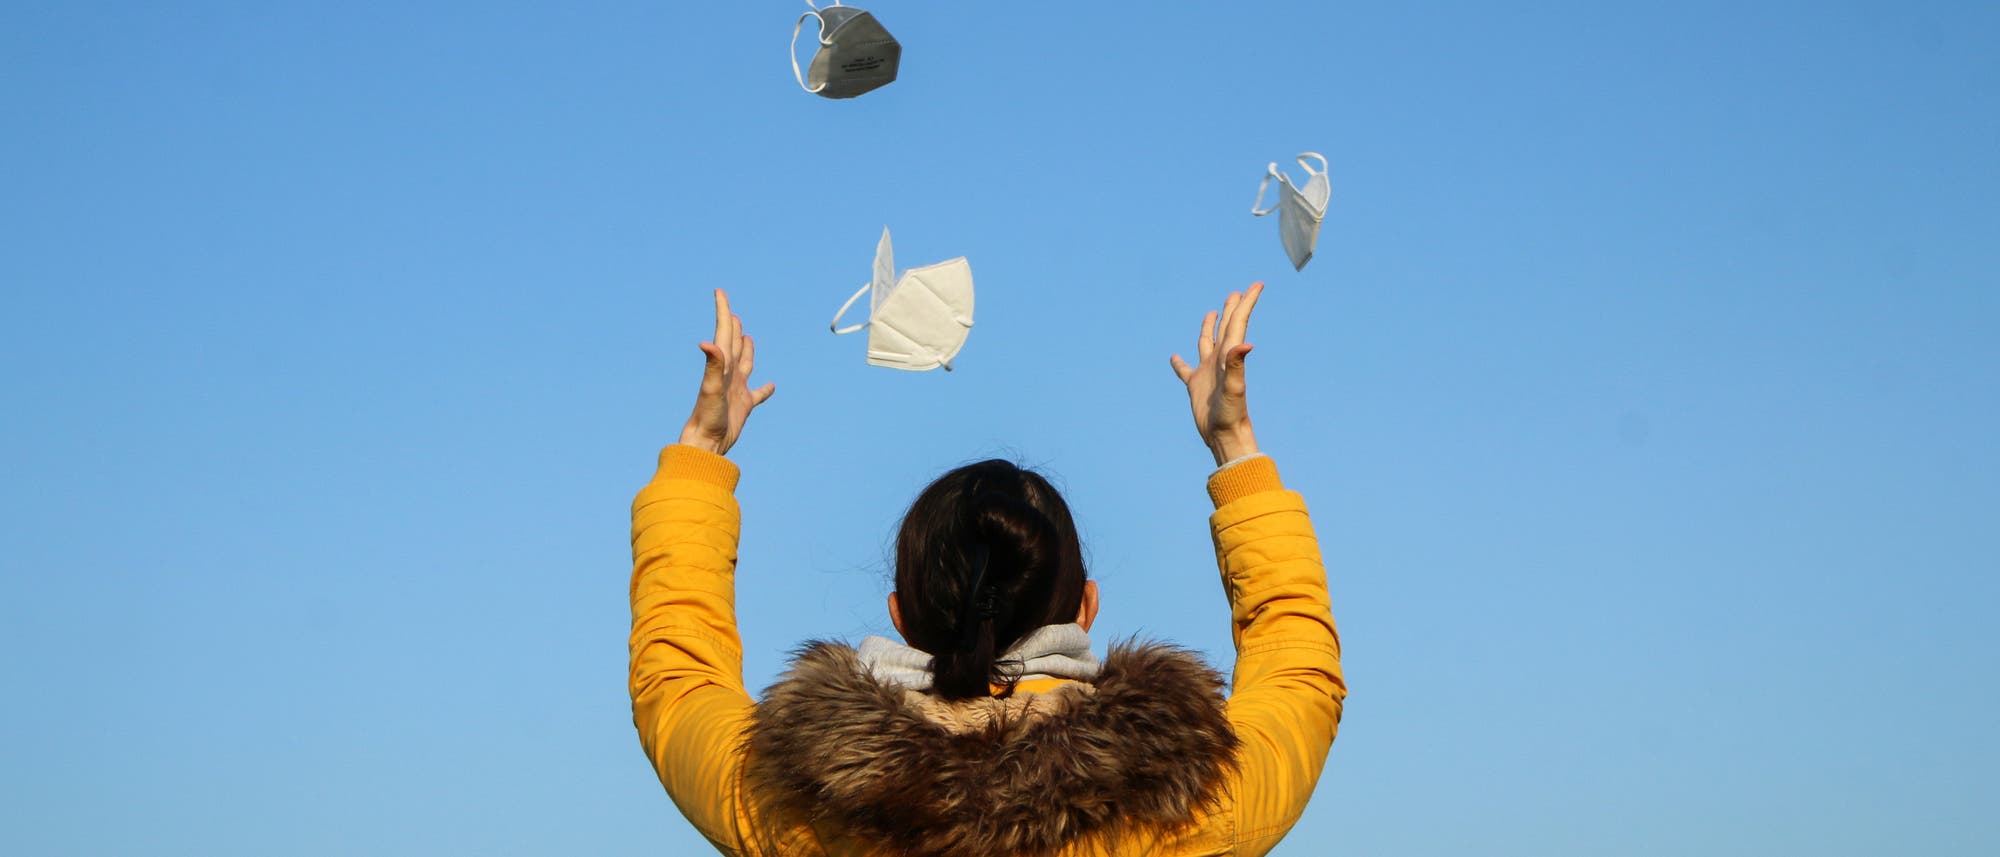 Eine Frau von hinten in gelber Winterjacke, die vor einem blauen Himmel mehrere FFP2-Masken in die Luft wirft.